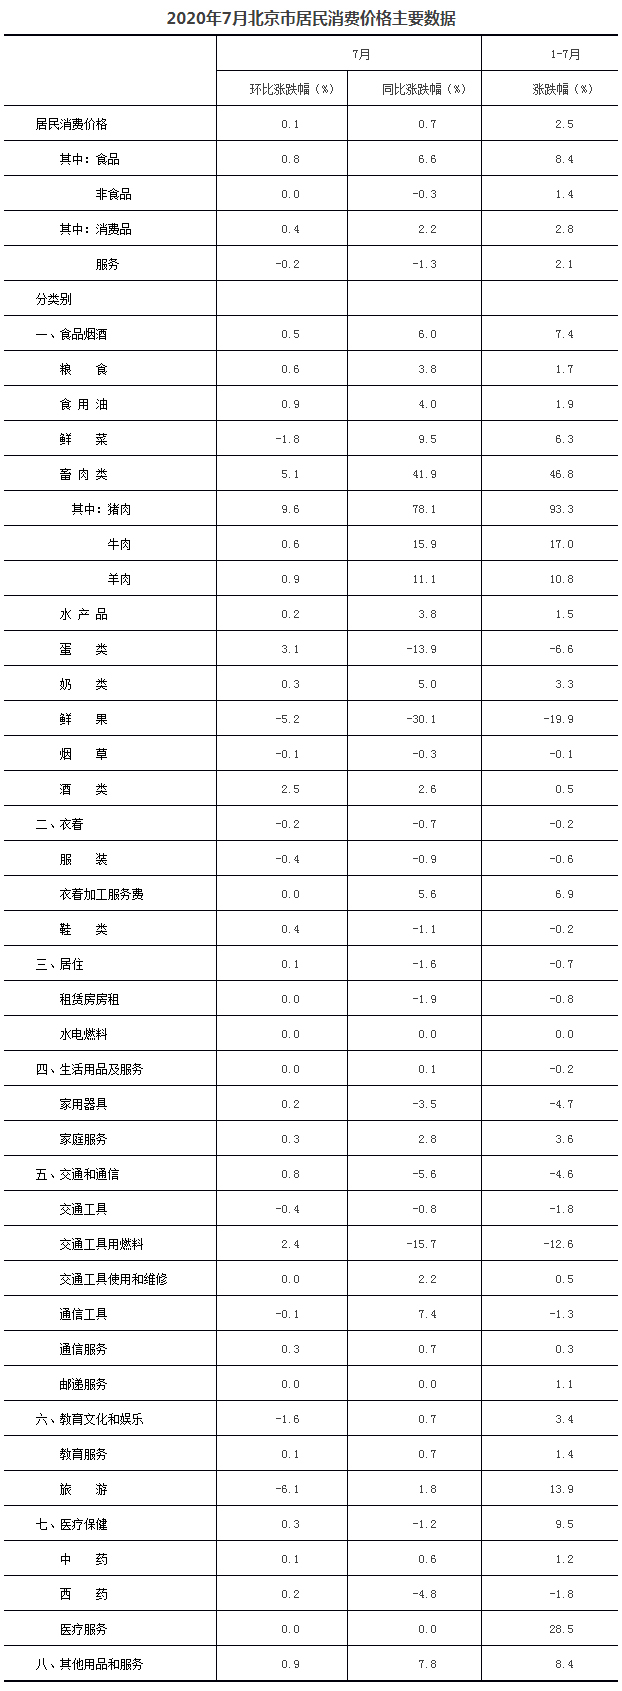 2020年7月北京市居民消费价格主要数据